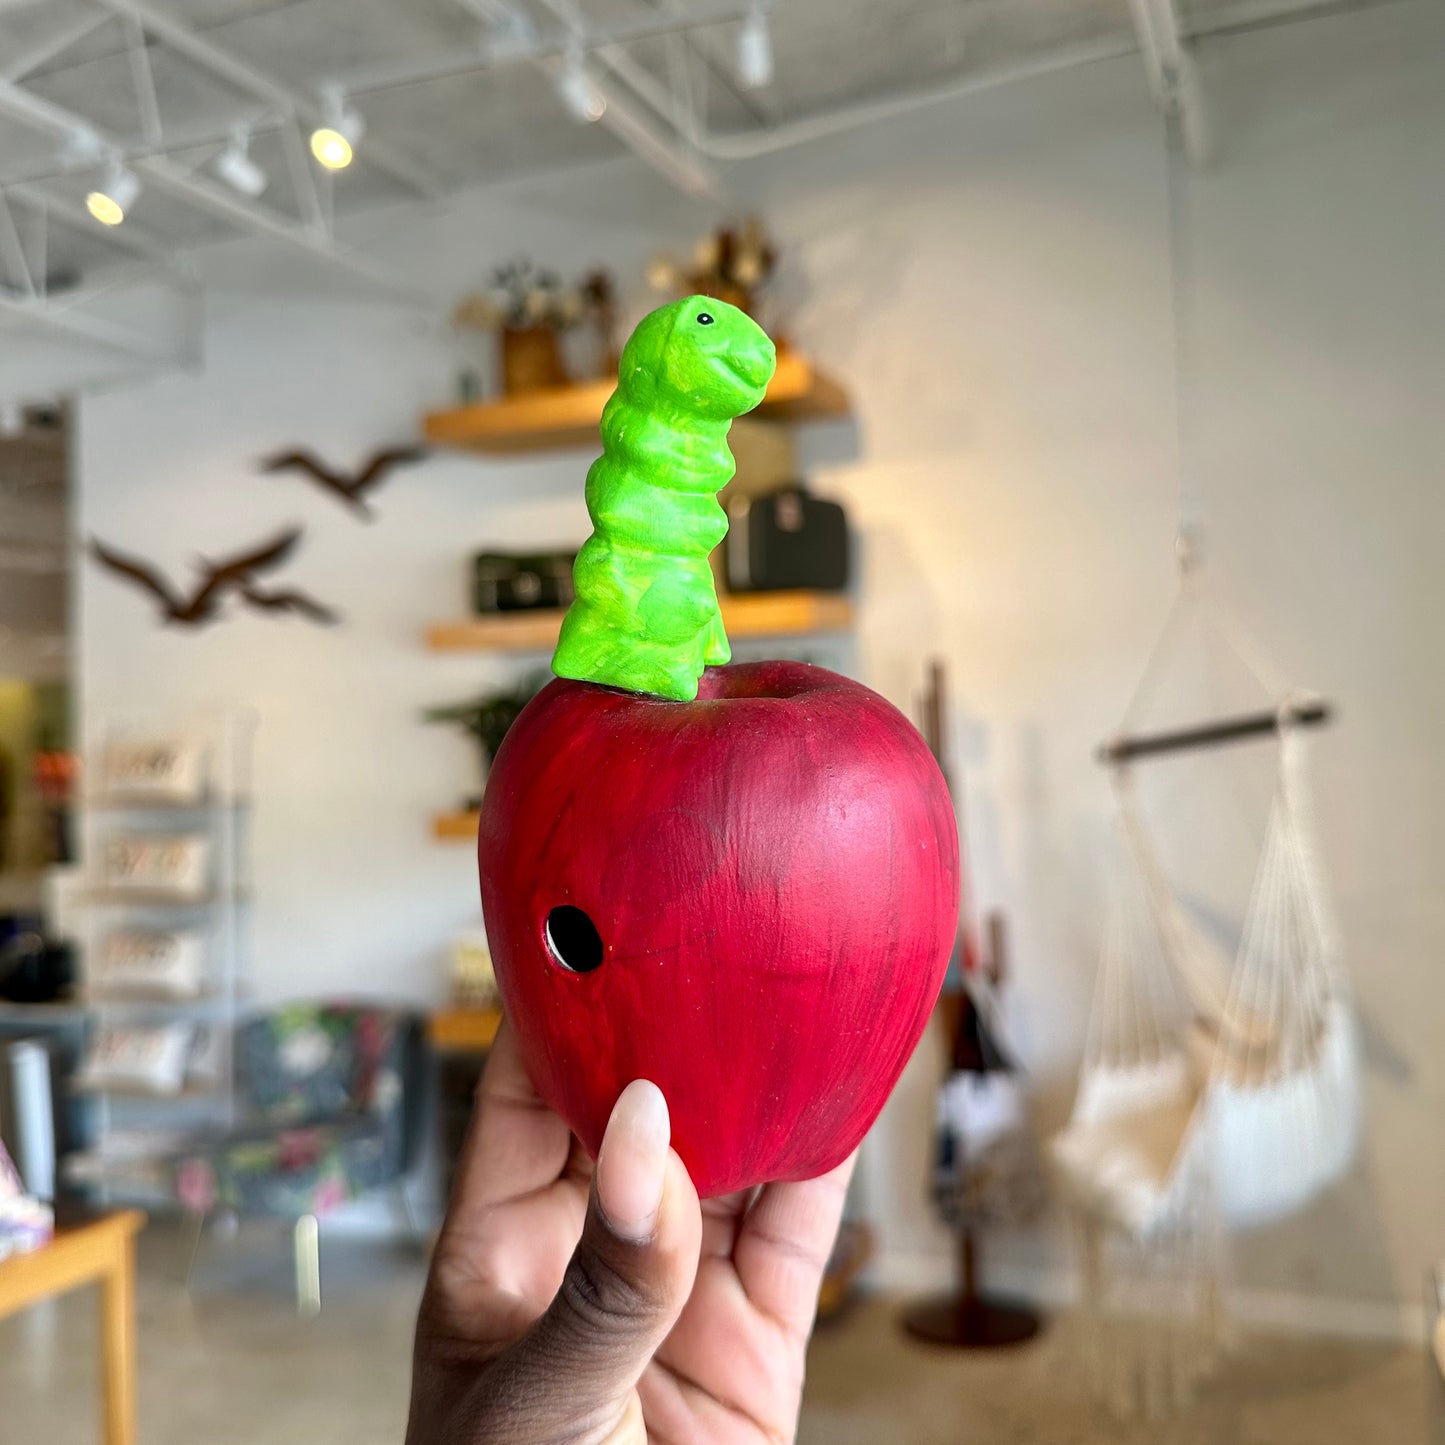 Ceramic Hand Painted Worm On Apple Figure